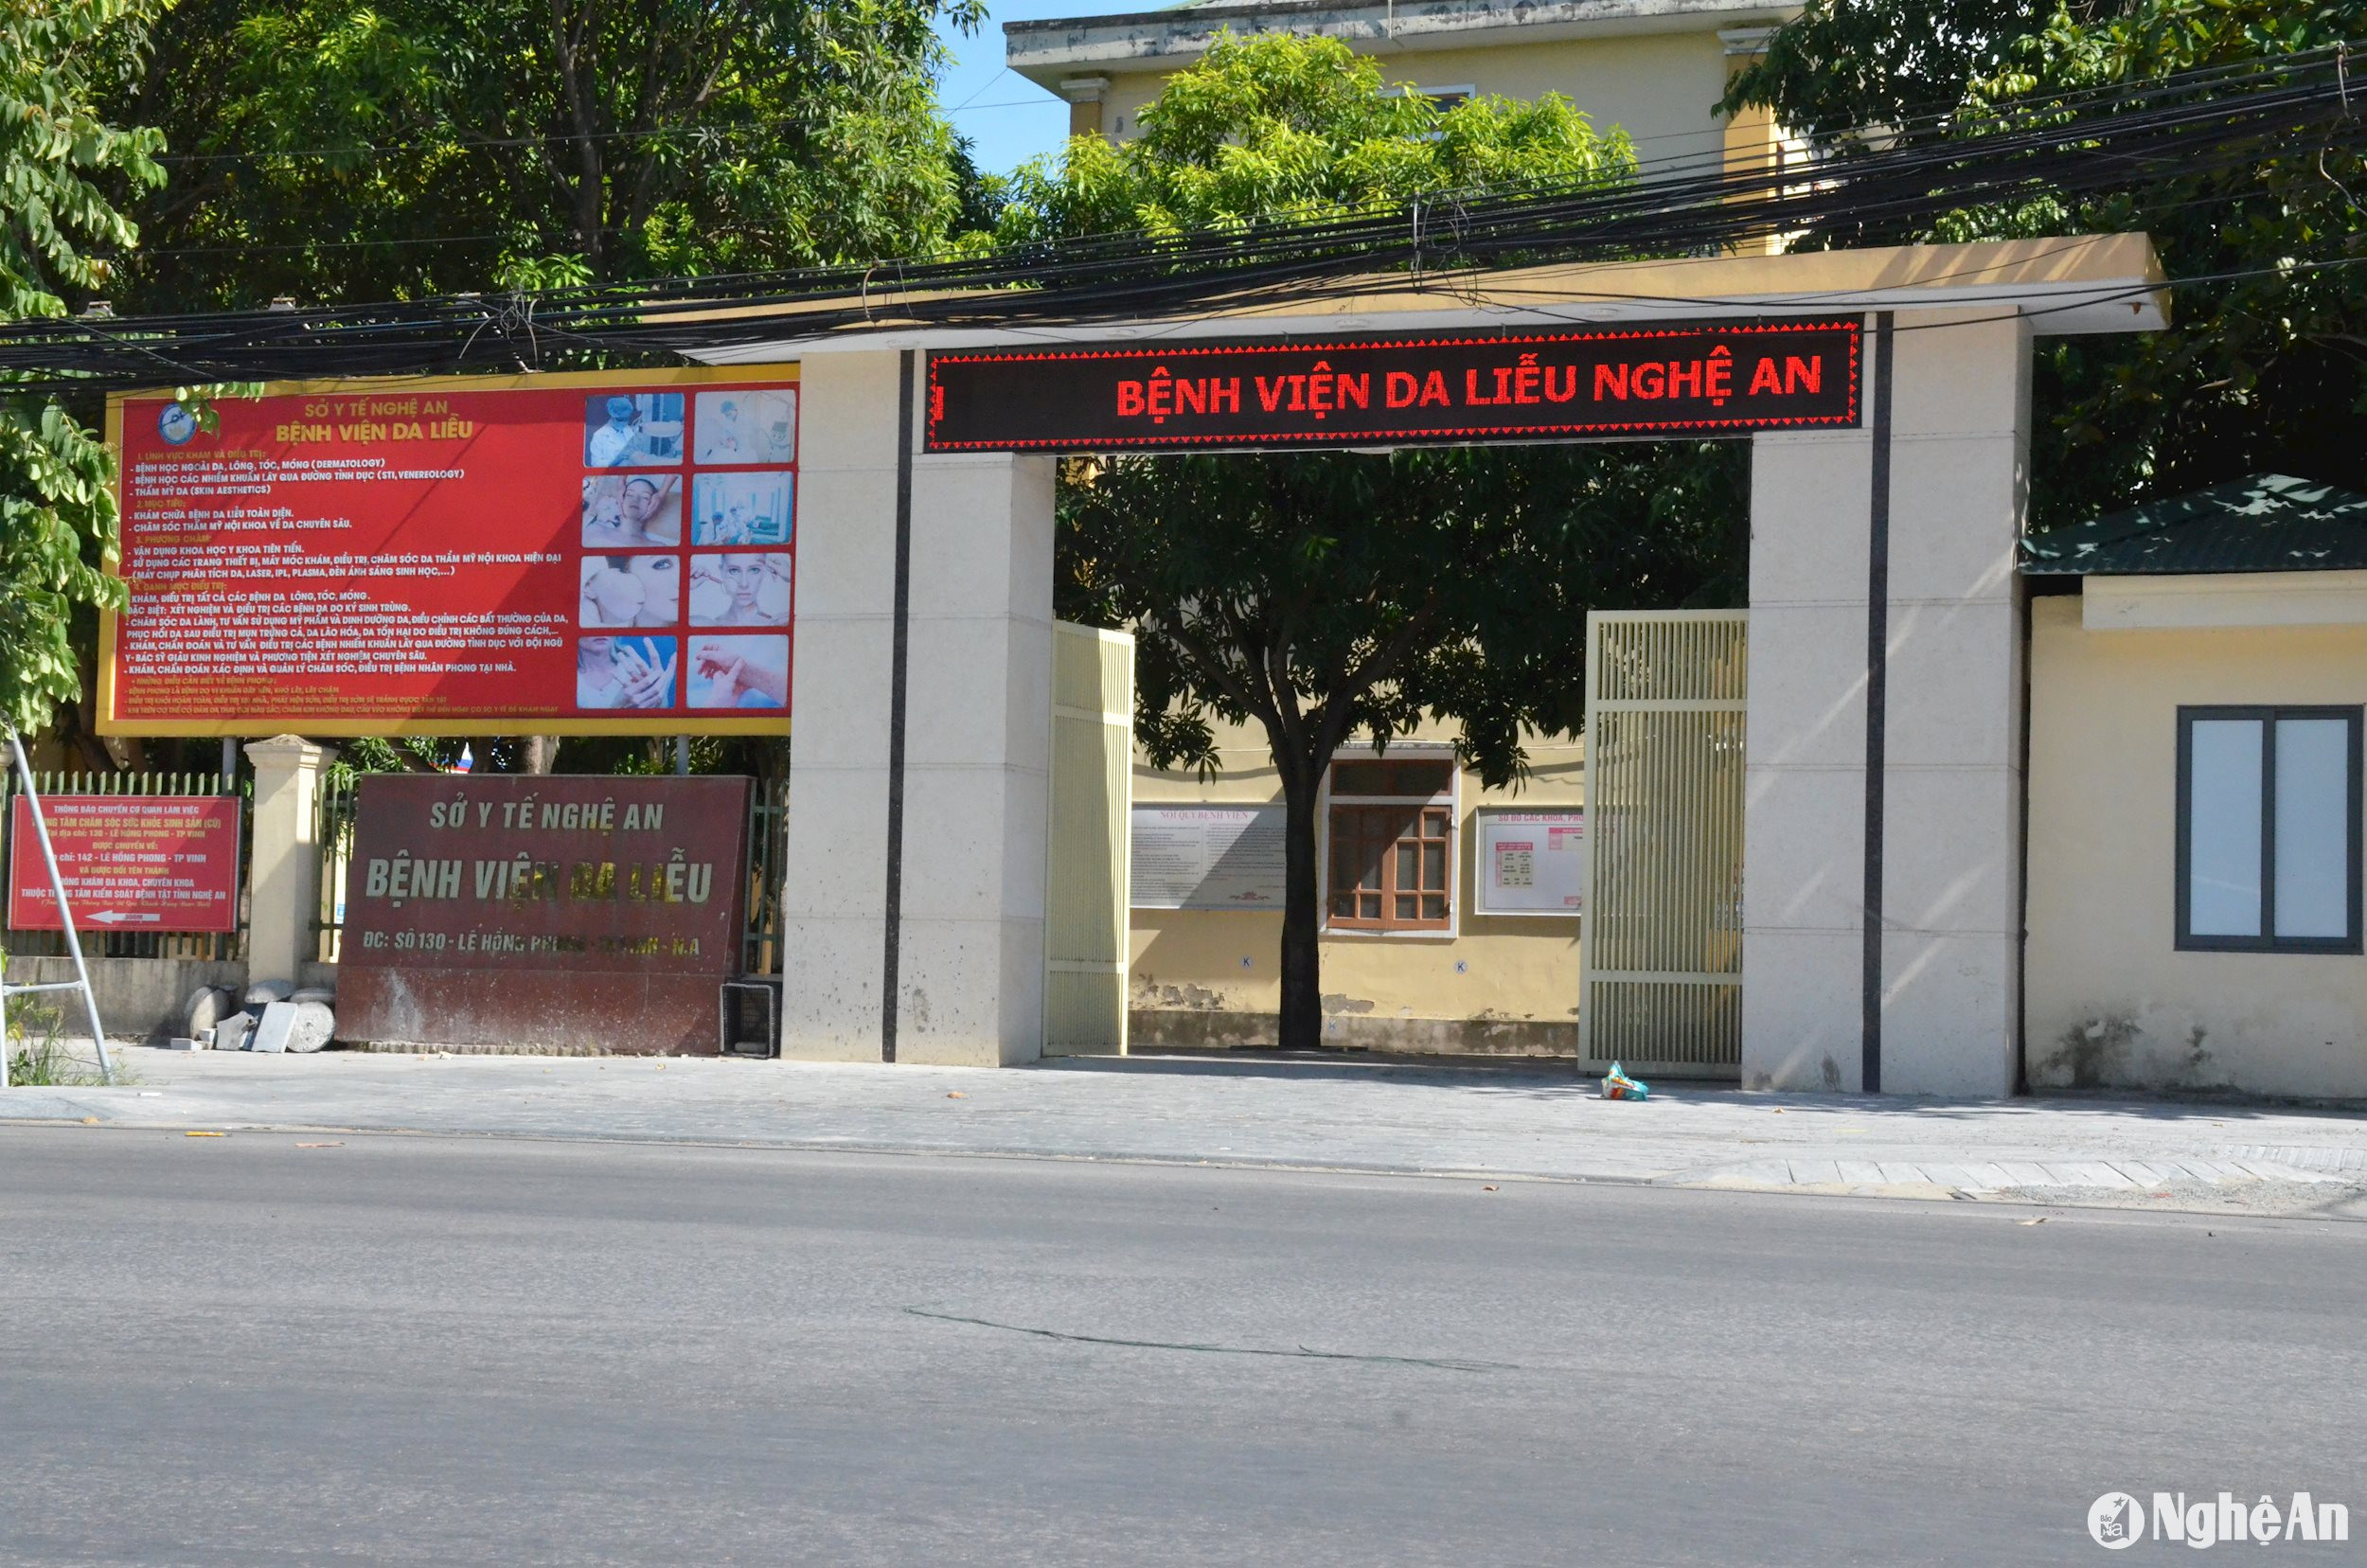 Bệnh viện Da liễu Nghệ An có địa chỉ số 130, đường Lê Hồn Phong, thành phố Vinh. Bệnh viện có vị trí đẹp để thu hút bệnh nhân. Ảnh Thành Chung